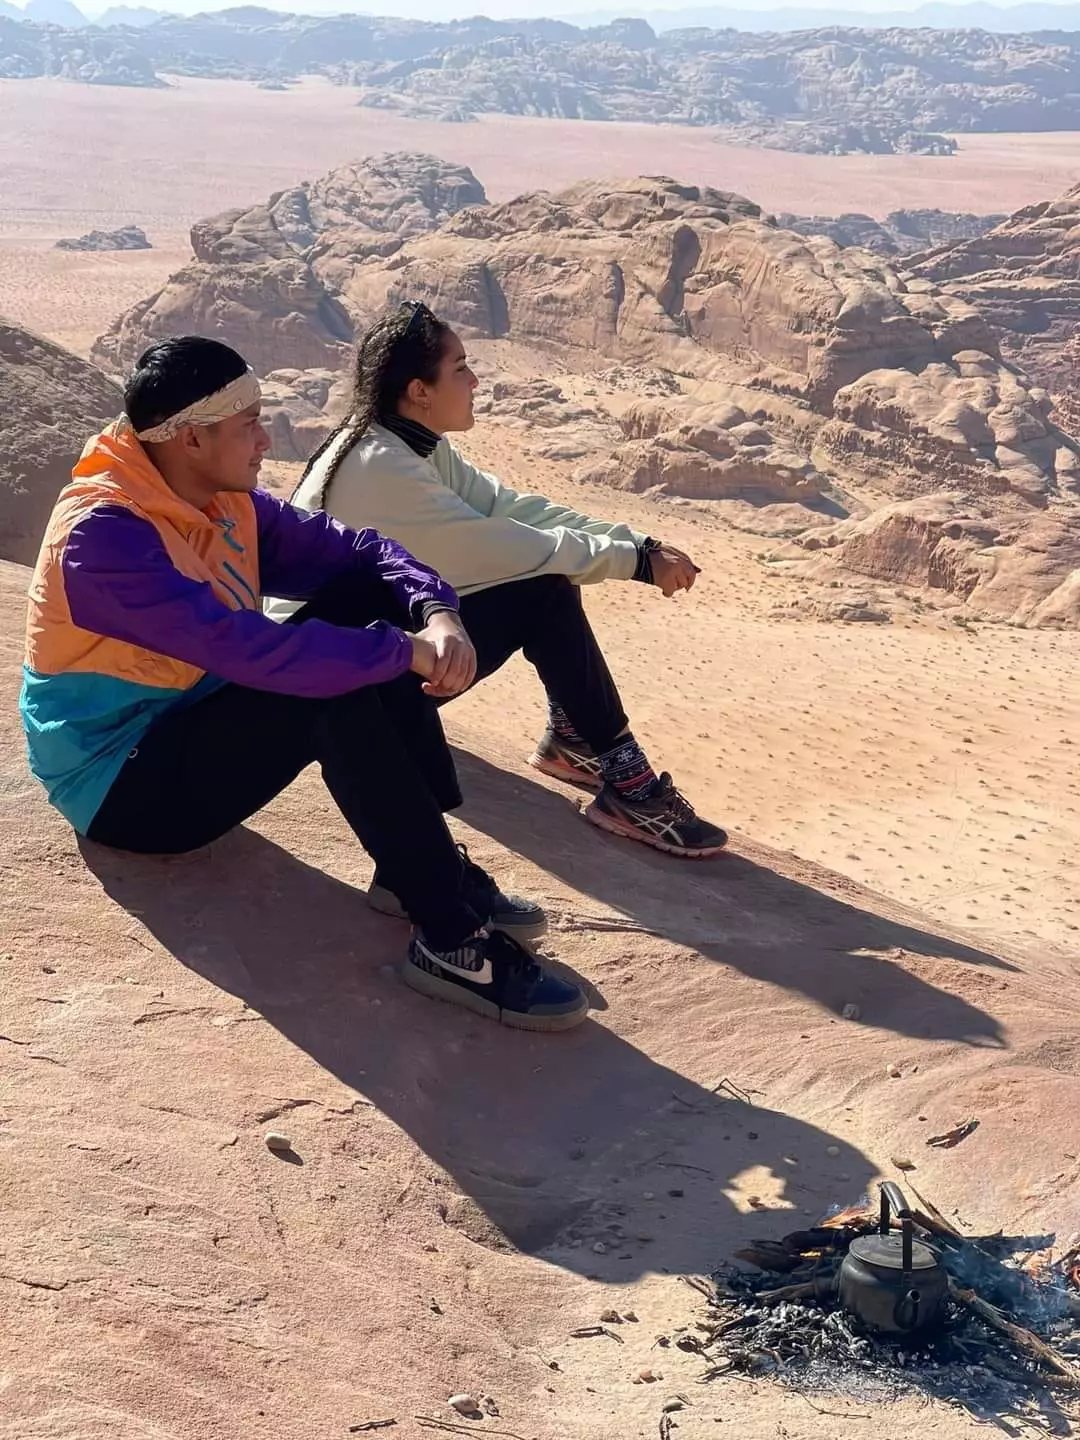 From Wadi Rum: Desert Hikes